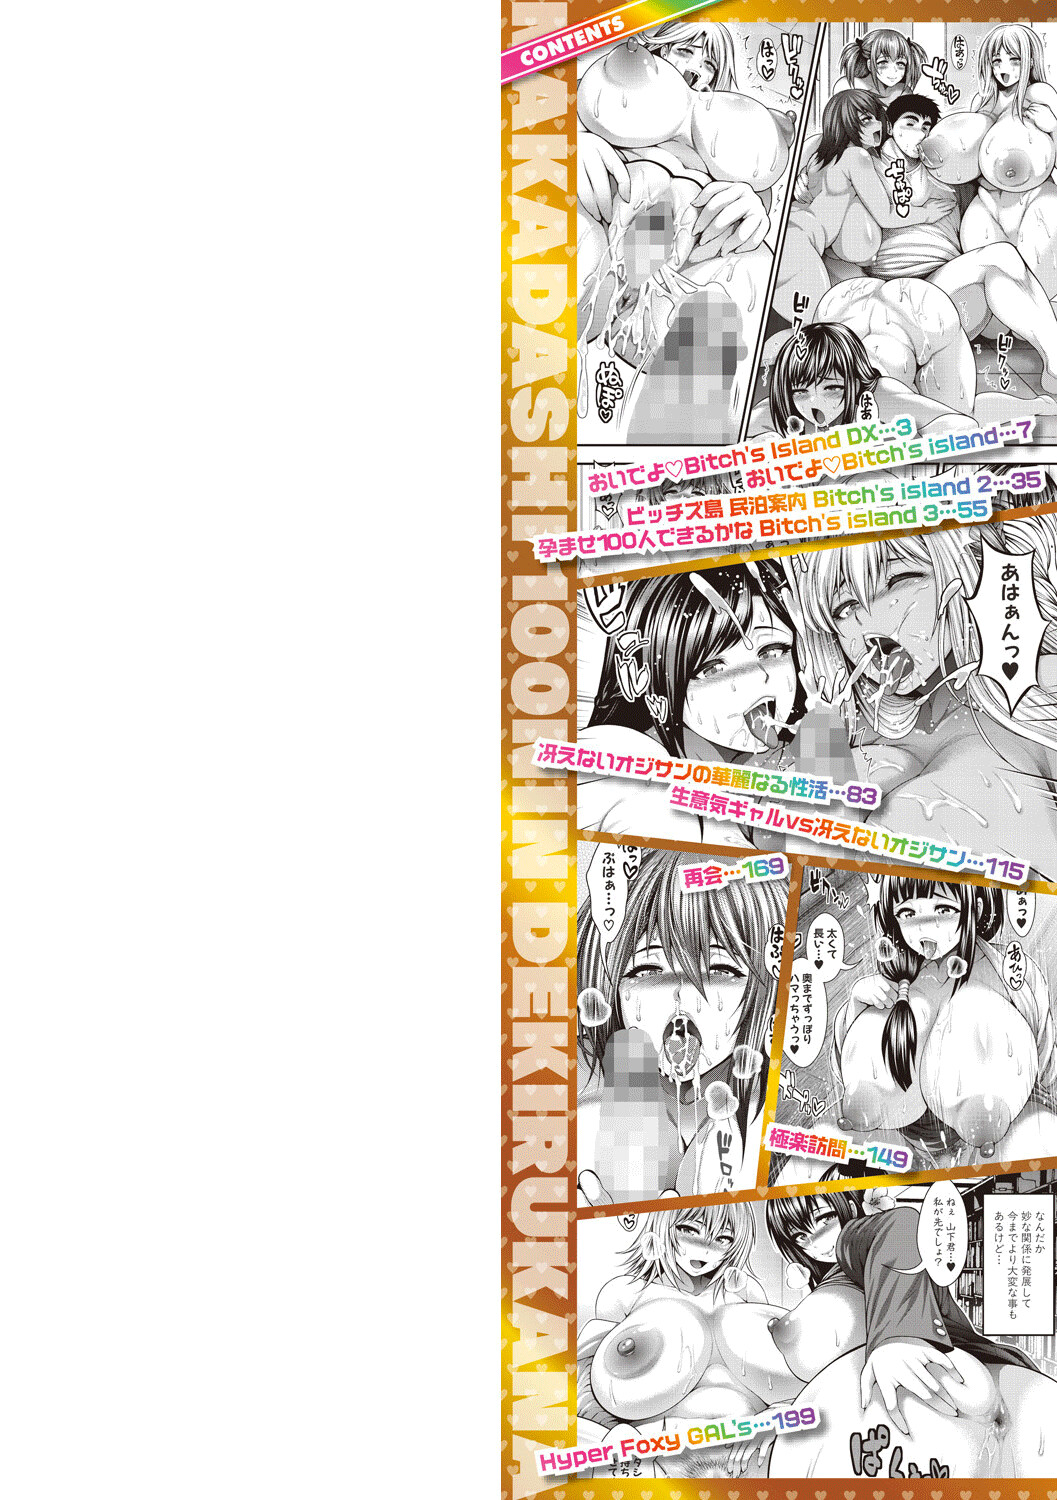 Hentai Manga Comic-I Wonder If I Can Creampie 100 Girls-Chapter 1-2-2